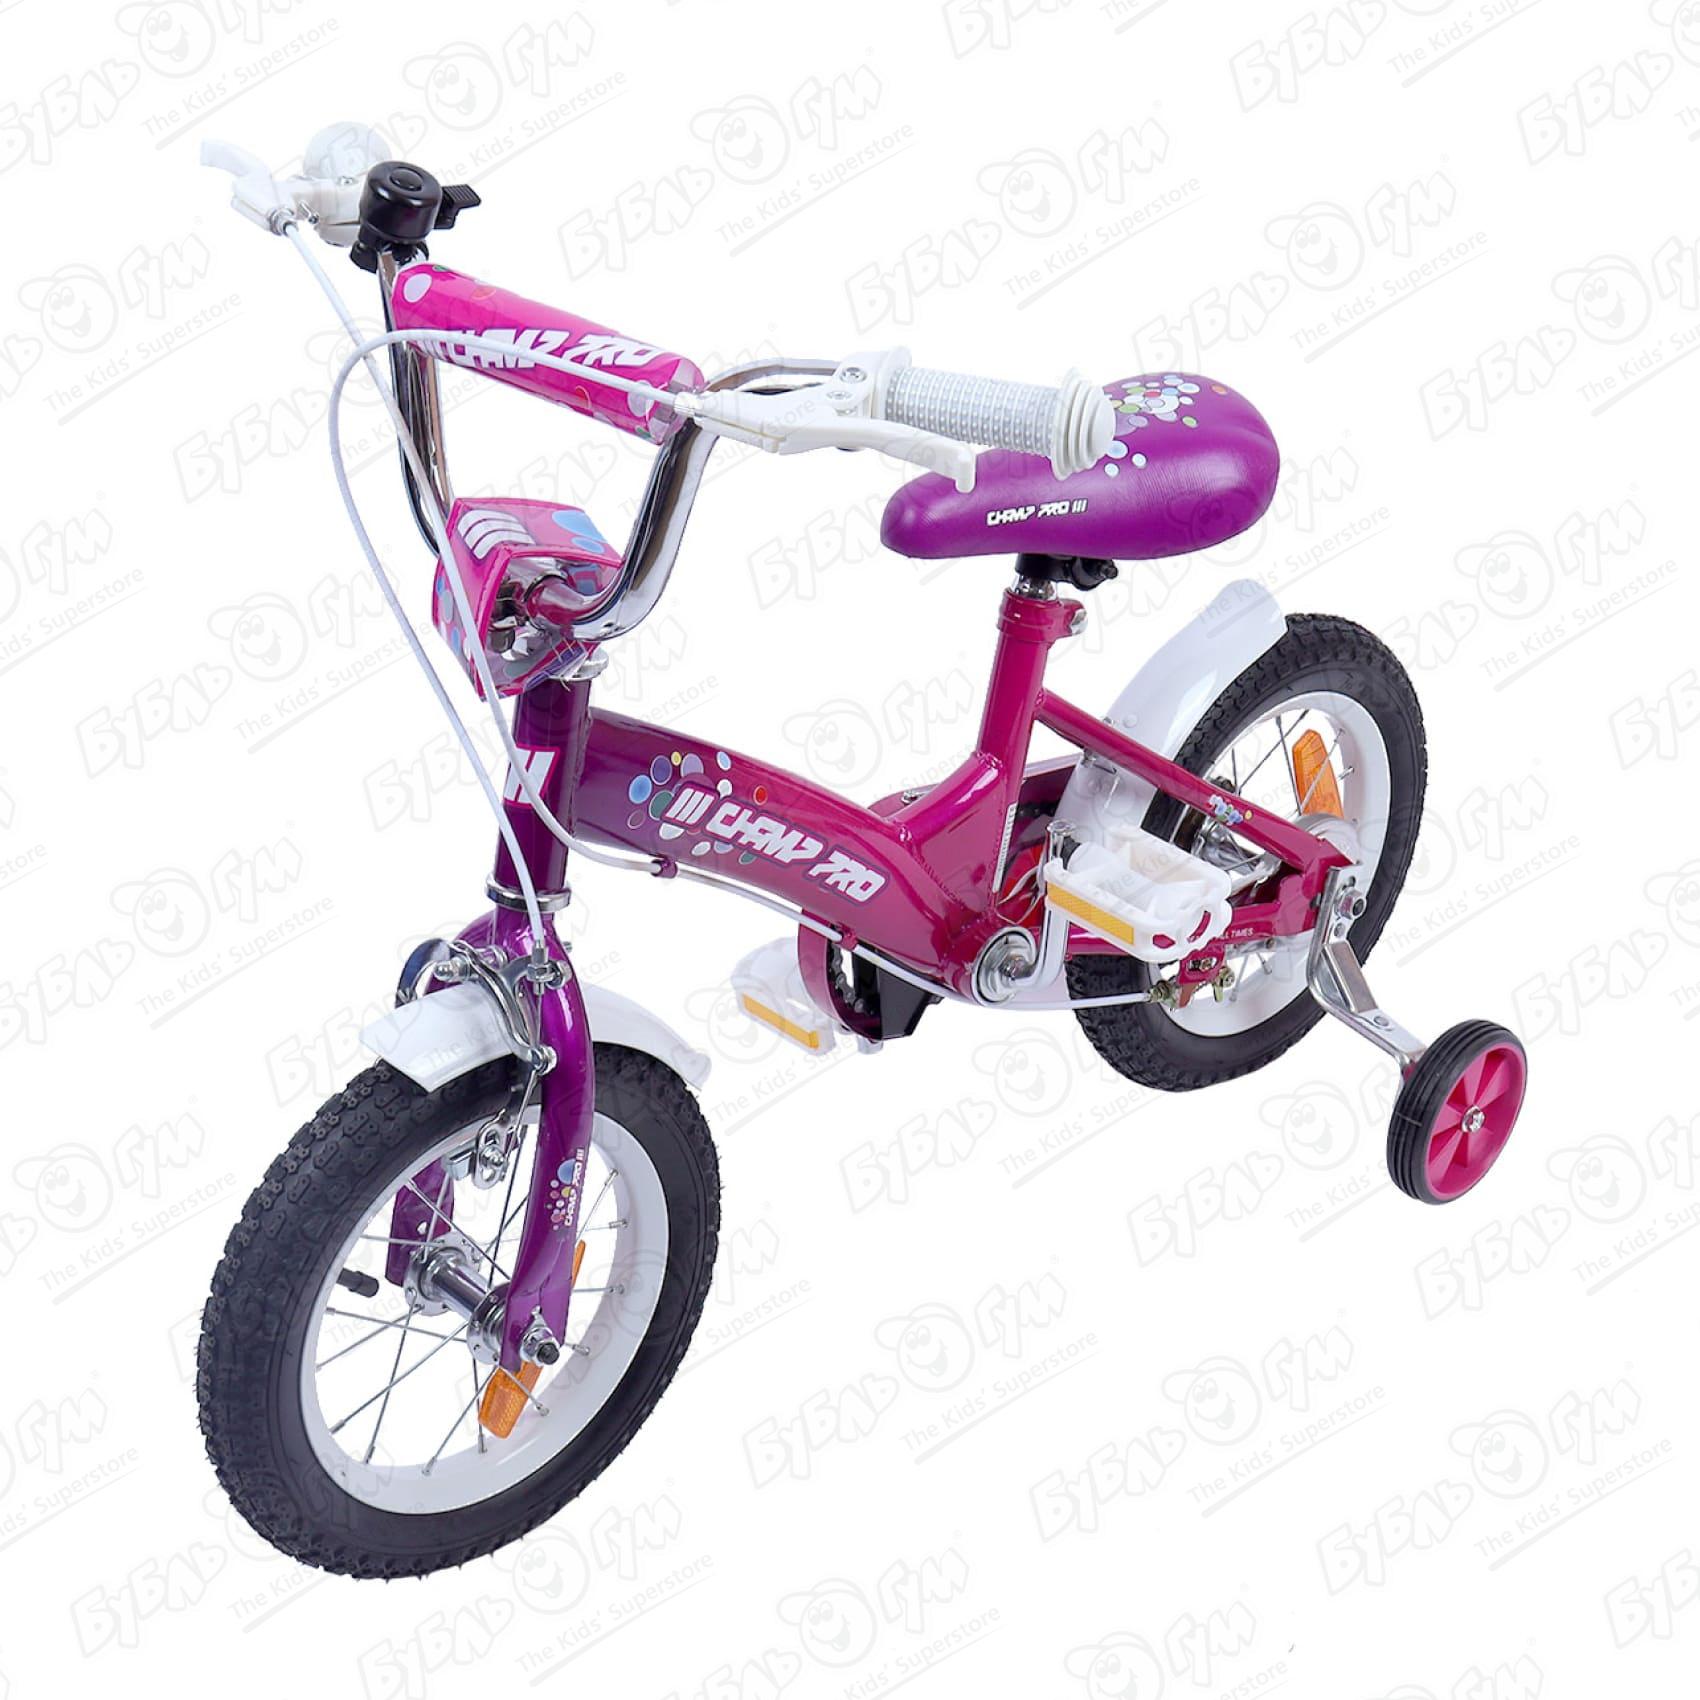 Велосипед Champ Pro G12 детский четырехколесный розовый - фото 1